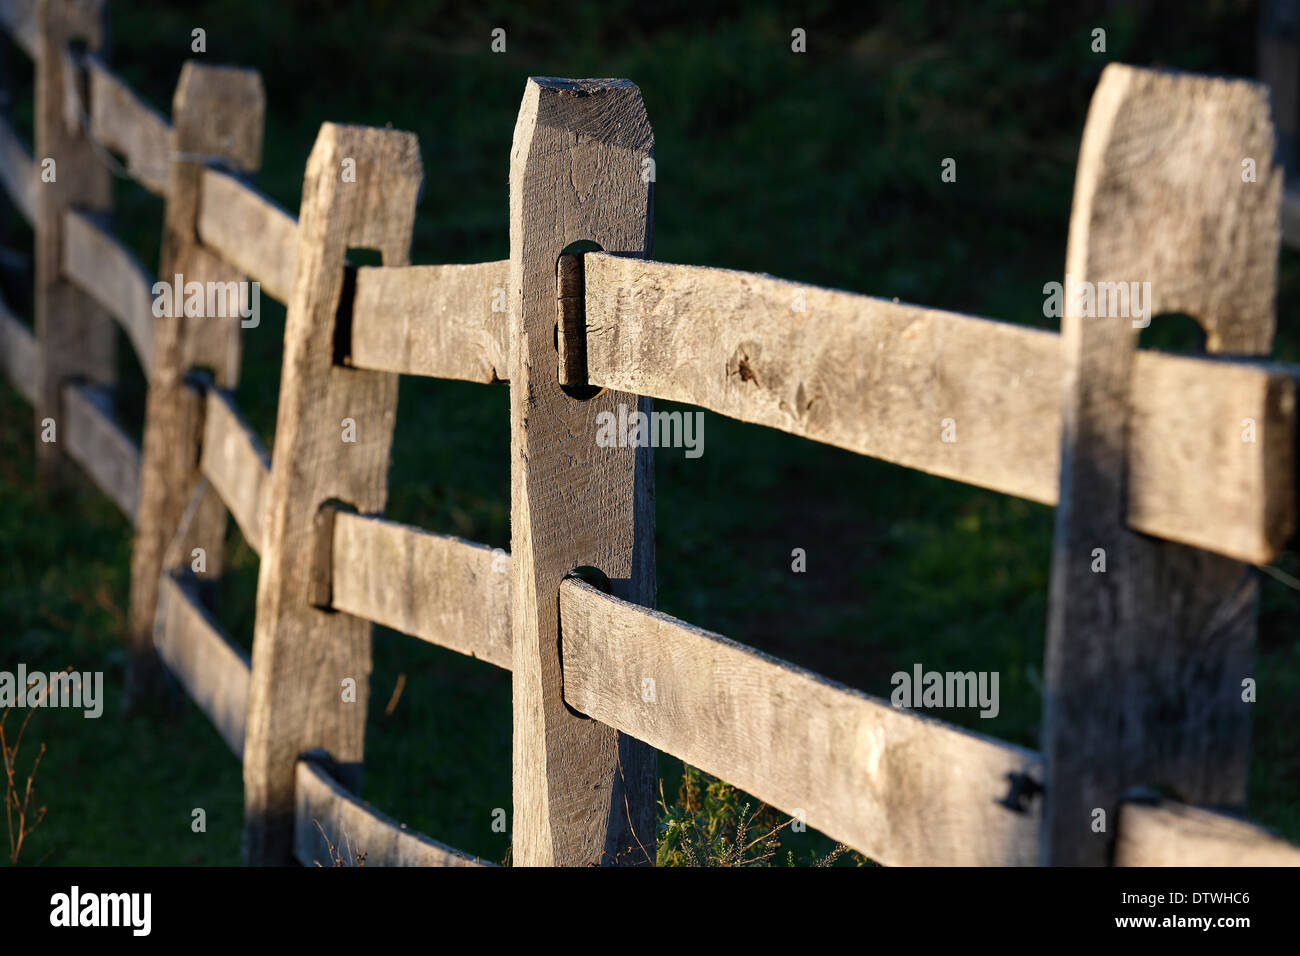 wood fence railing Stock Photo